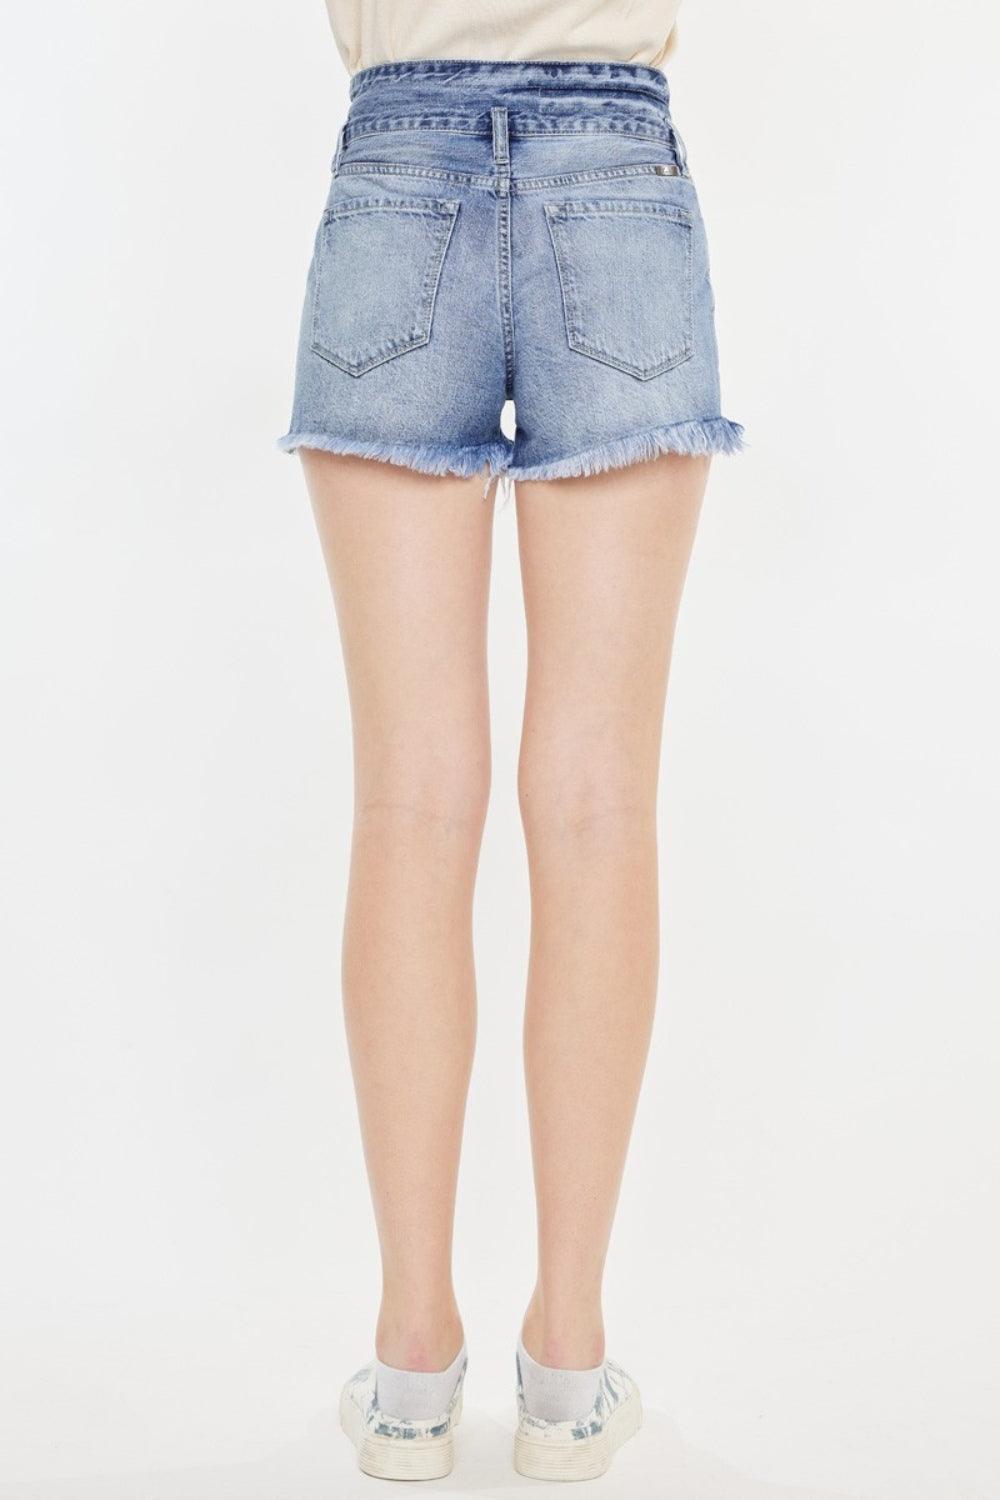 Kancan High Rise Frayed Hem Denim Shorts - AMIClubwear